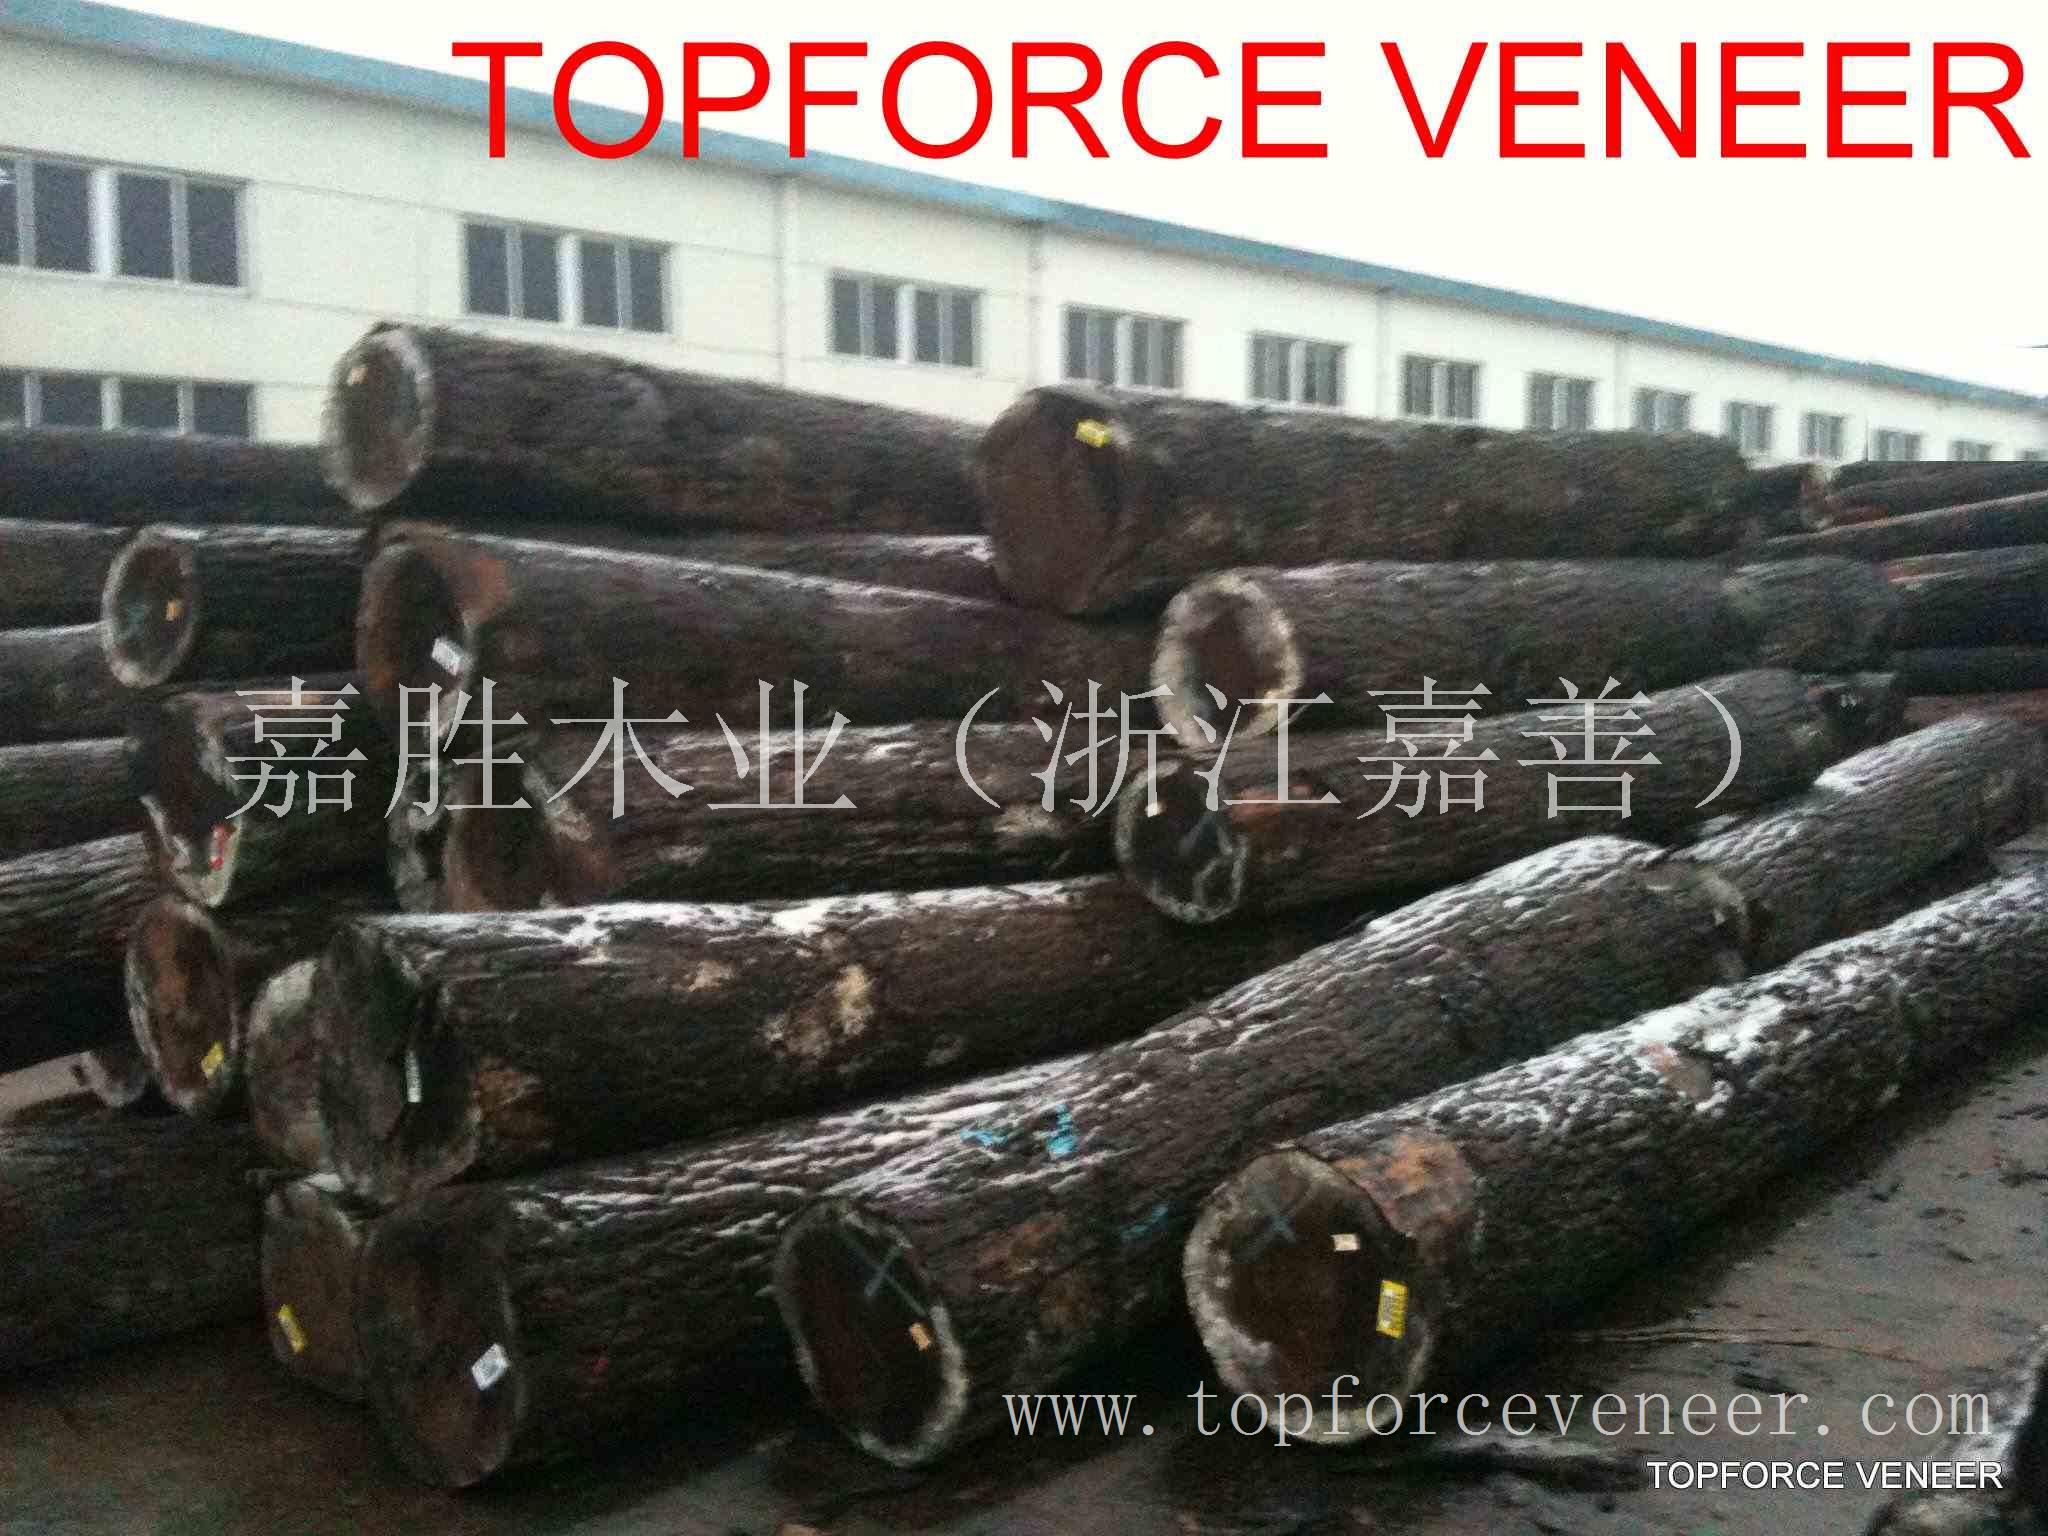 浙江杭州美国黑胡桃原木,ZheJiang American Walnut Logs,二面清,三面清锯切级,三面清旋切级和四面清刨切级,